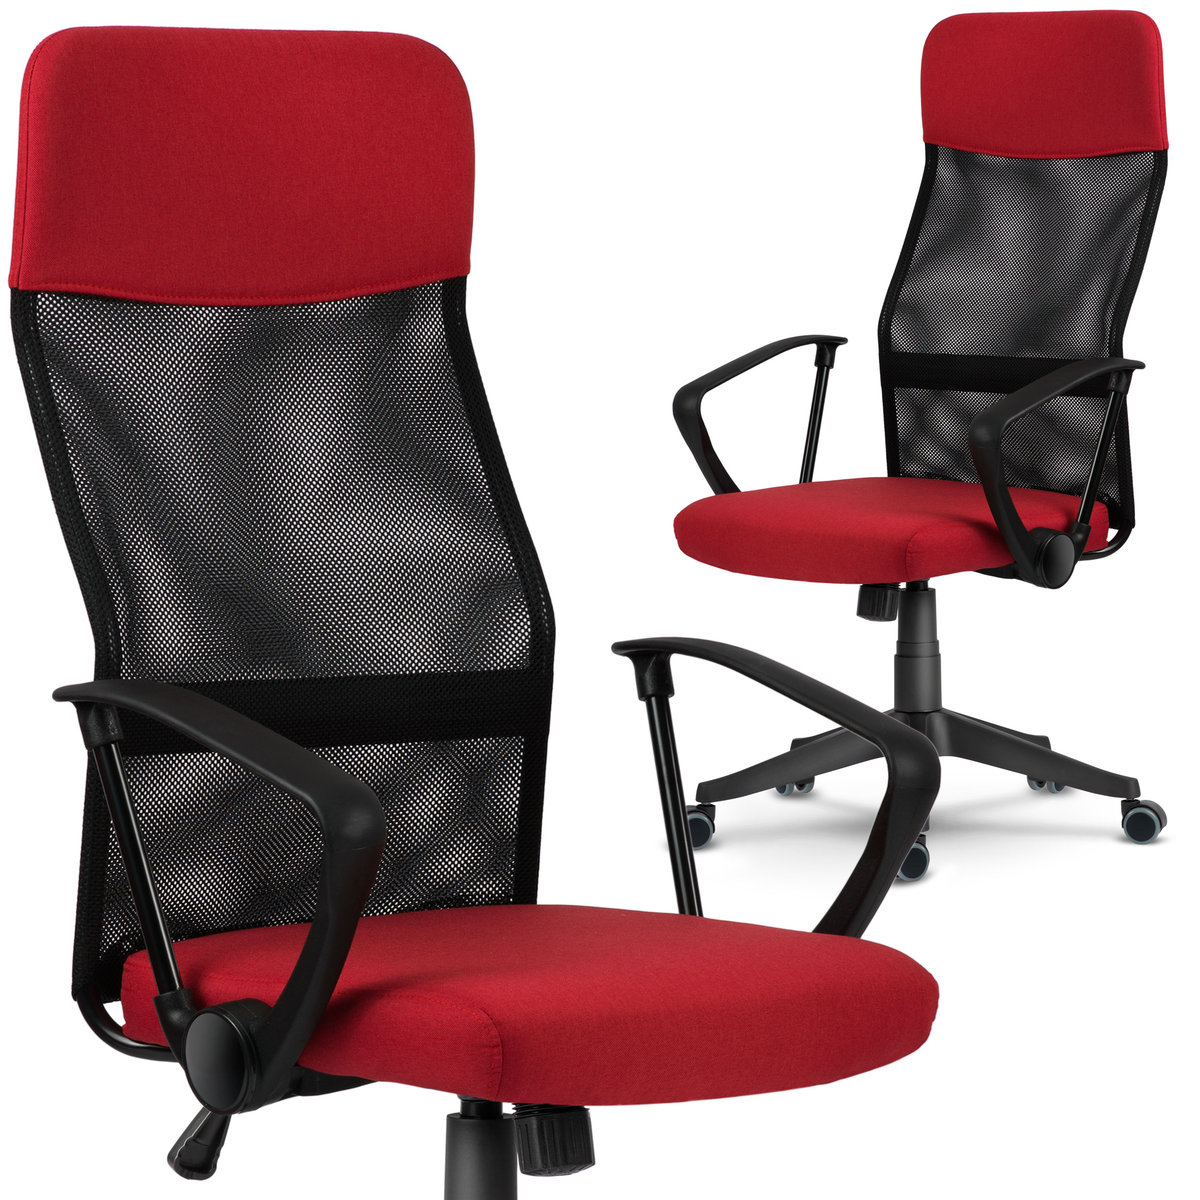 Sofotel Fotel biurowy z mikrosiatki Sofotel Sydney czerwono-czarny 2453